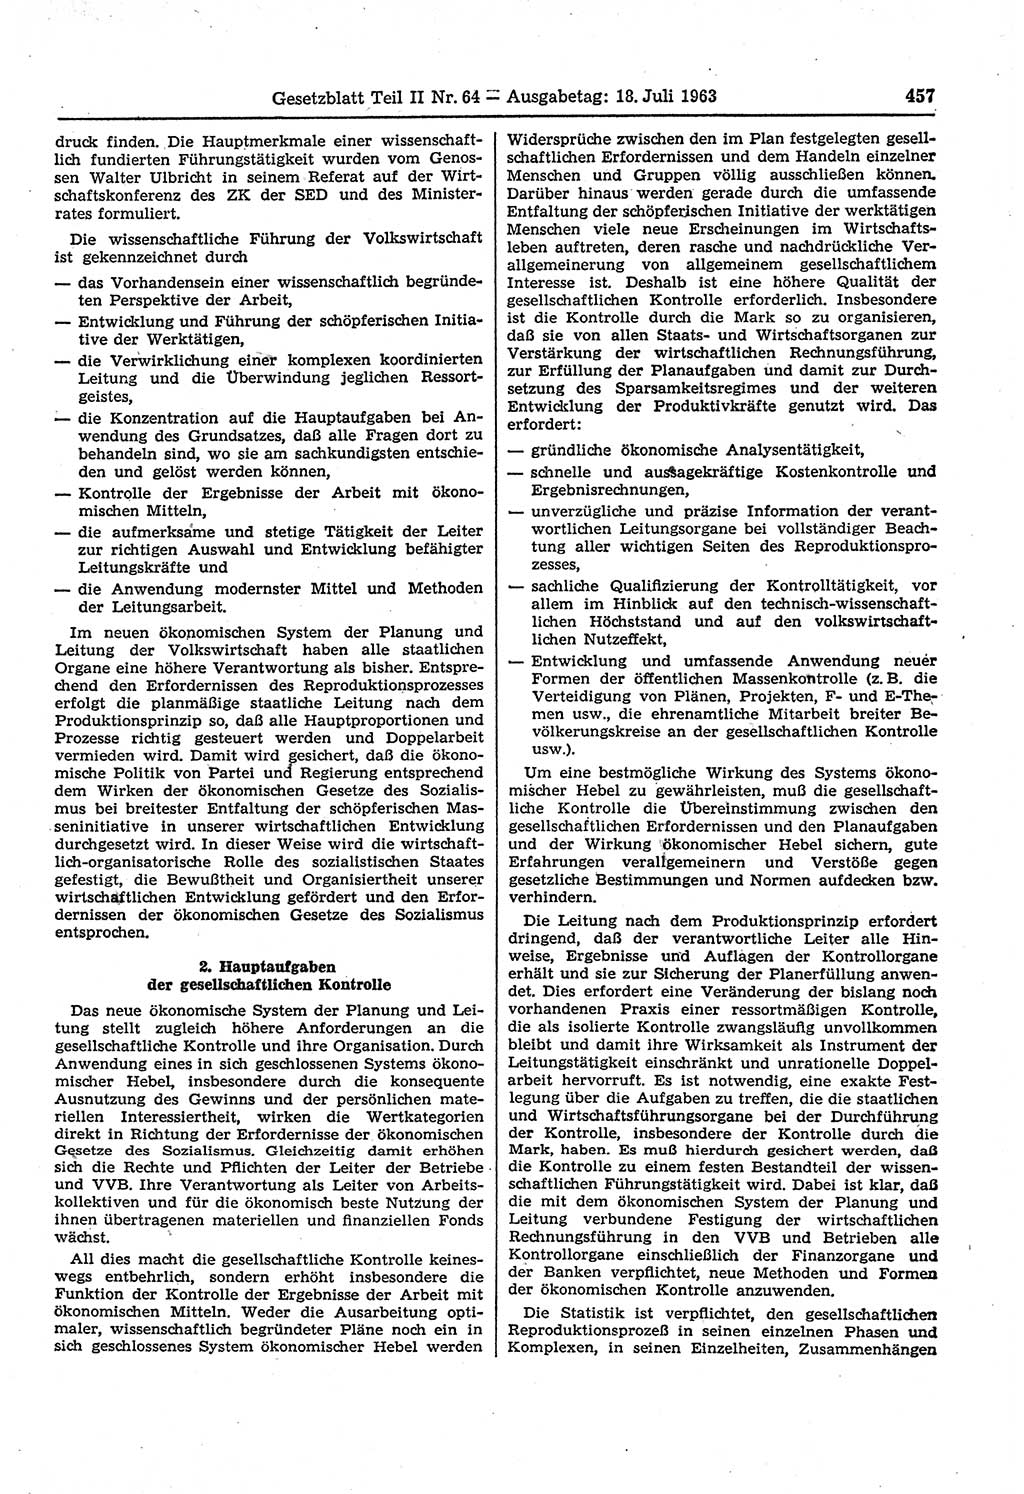 Gesetzblatt (GBl.) der Deutschen Demokratischen Republik (DDR) Teil ⅠⅠ 1963, Seite 457 (GBl. DDR ⅠⅠ 1963, S. 457)